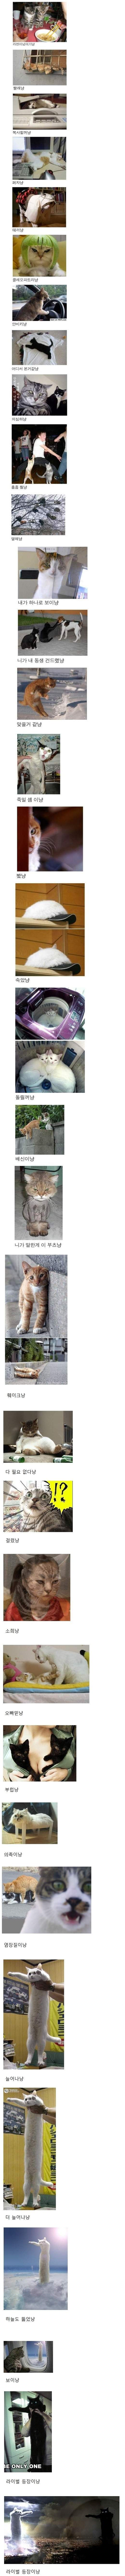 고양이 시리즈.jpg